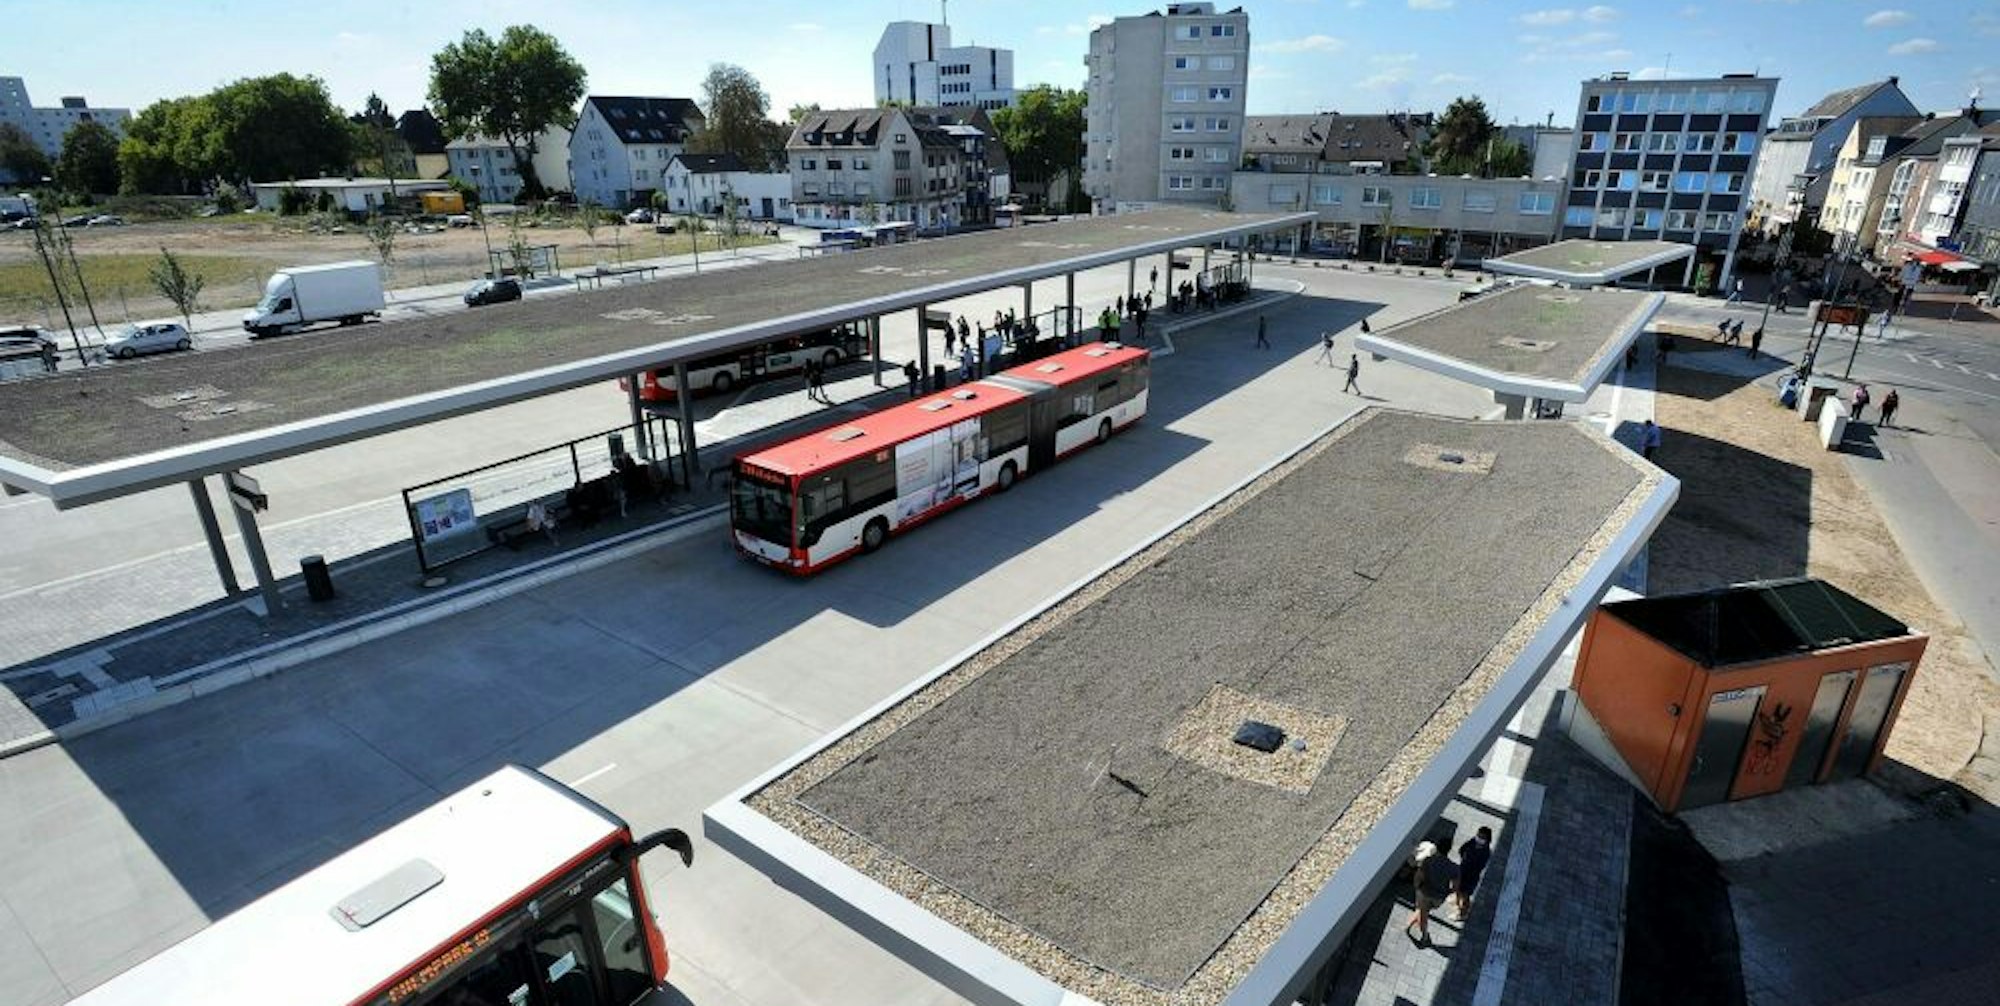 Der neue Busbahnhof in Opladen, frisch eingeweiht. Rund um den Bahnhof, an dem verschiedene Mobilitätsarten zusammenkommen, sollen demnächst Fahrgäste befragt werden.